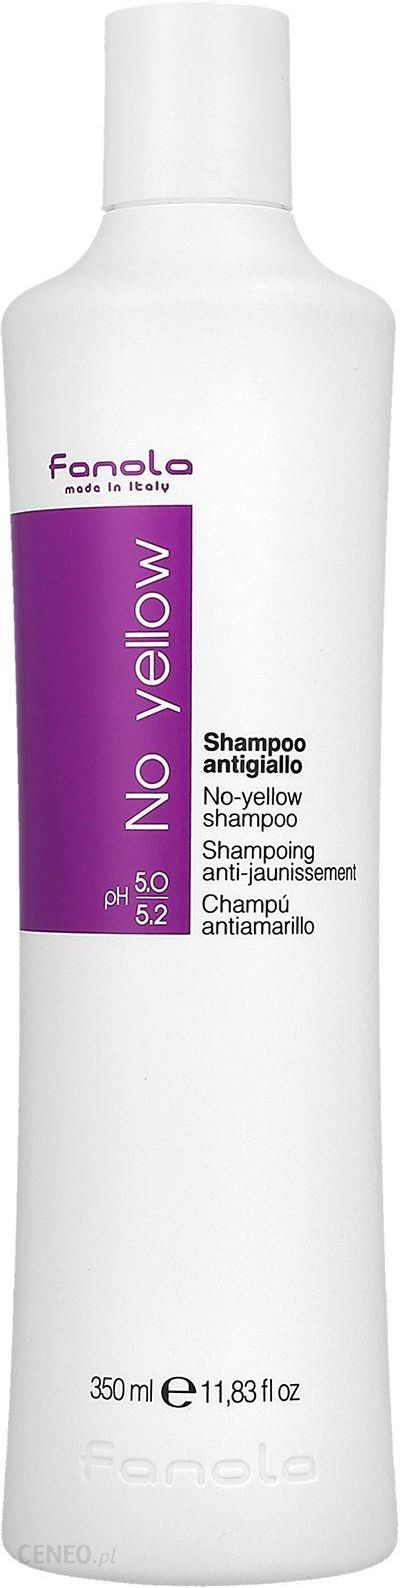 fanola no yellow szampon gdzie można kupić